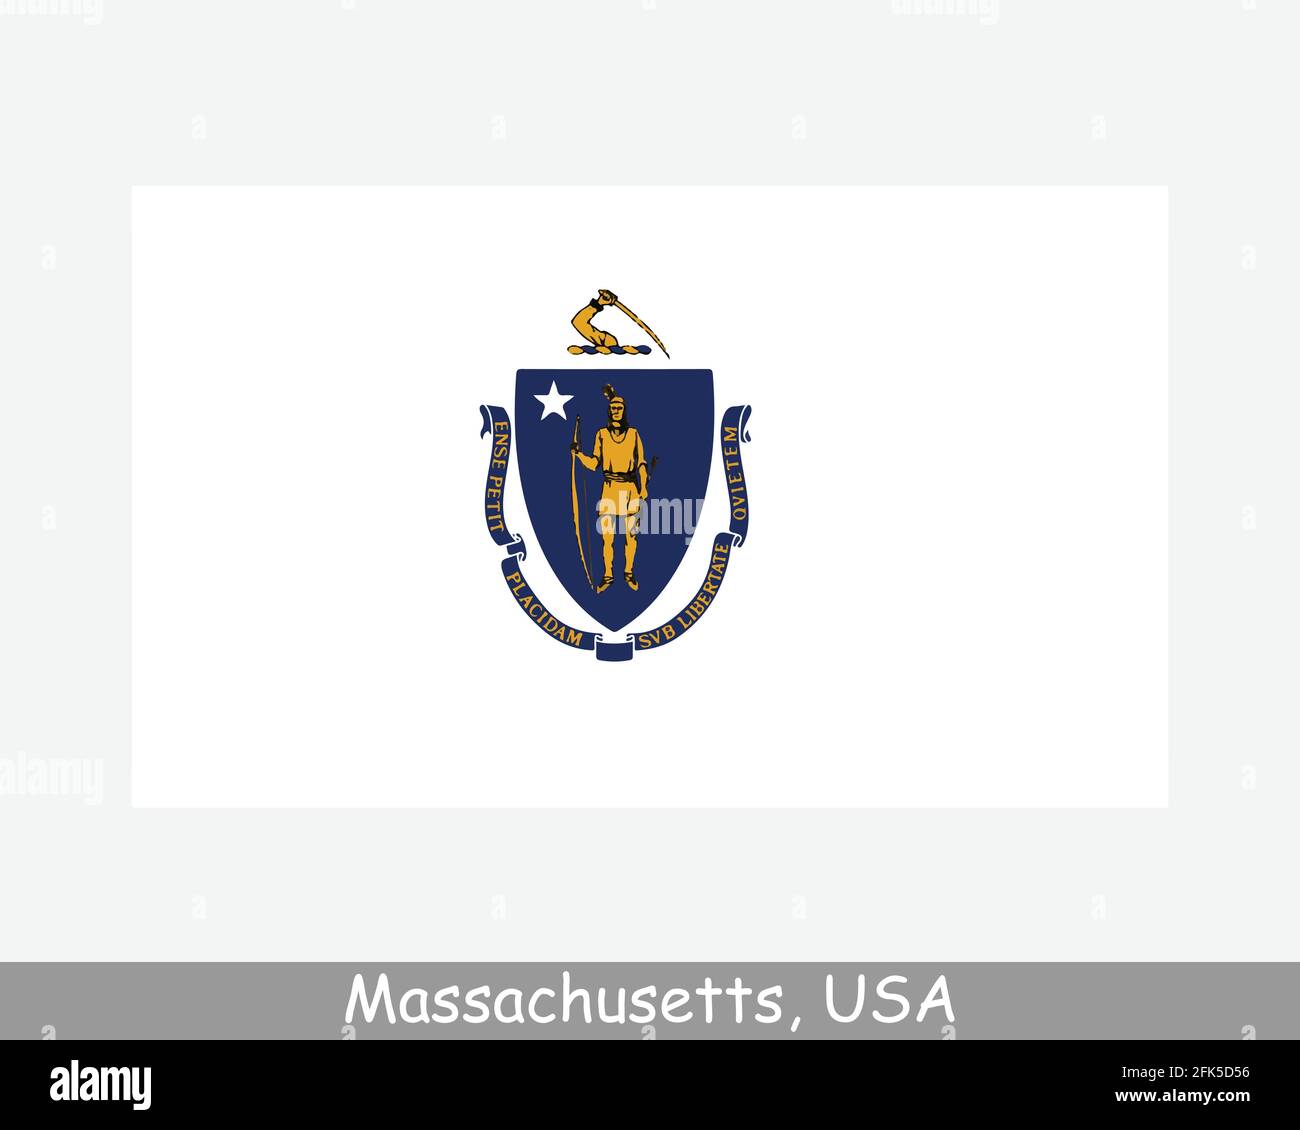 Drapeau de l'État des États-Unis du Massachusetts. Drapeau de ma, USA isolé sur fond blanc. États-Unis, Amérique, États-Unis d'Amérique, États-Unis. Vect Illustration de Vecteur